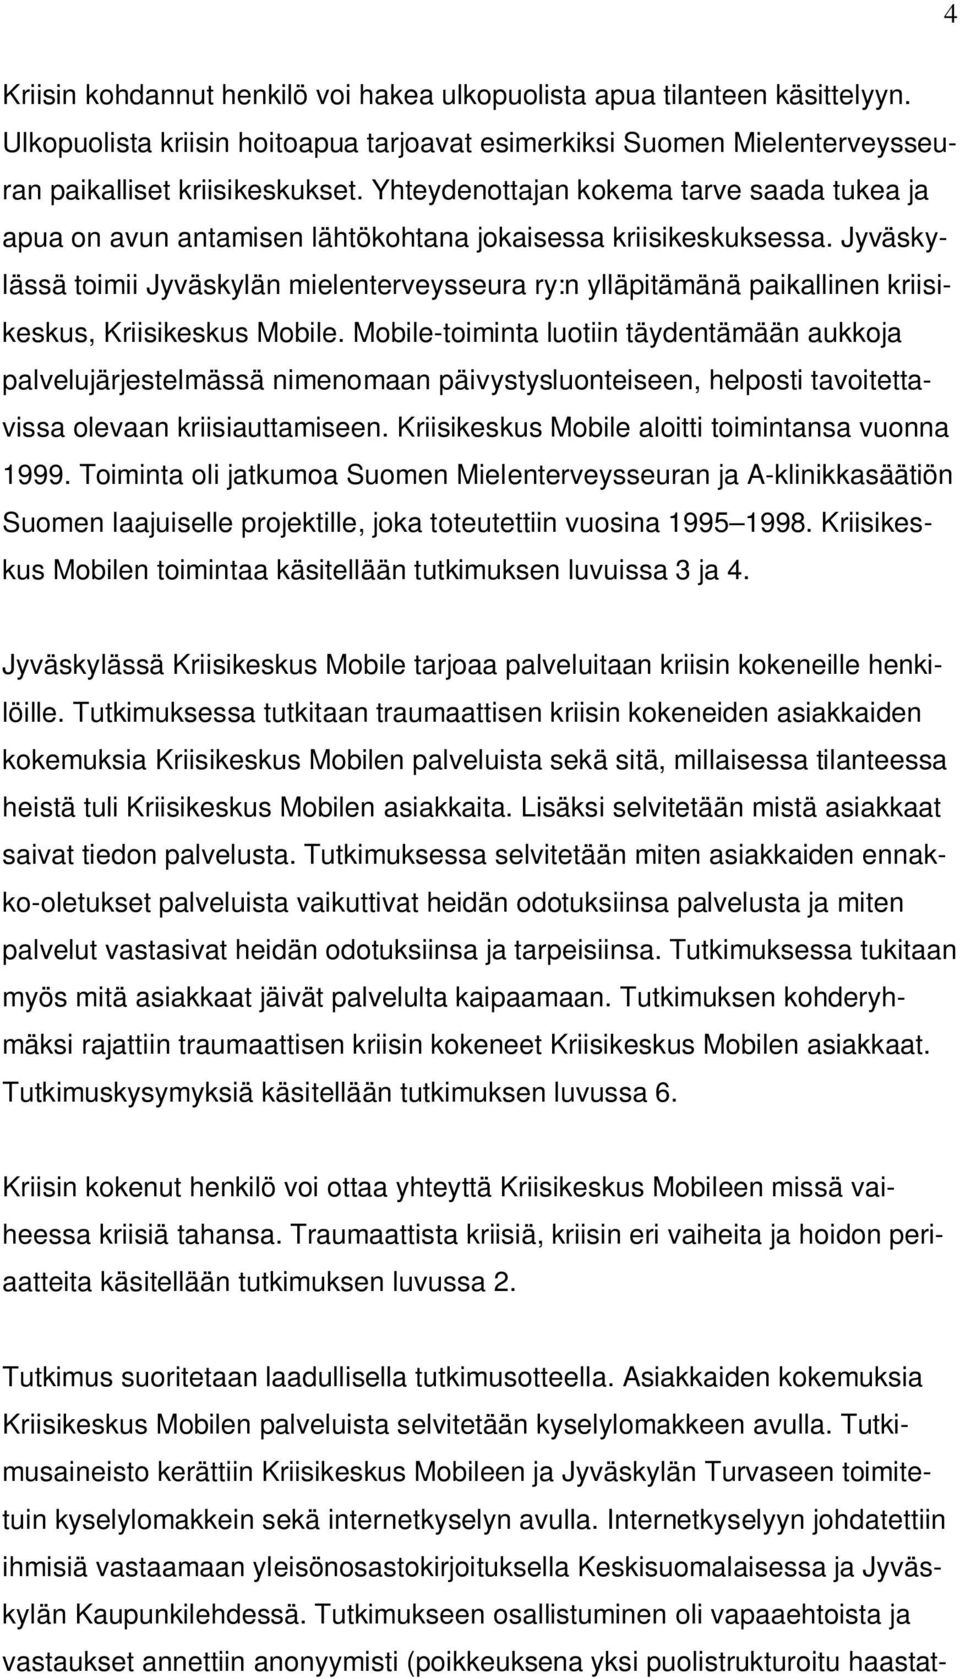 Jyväskylässä toimii Jyväskylän mielenterveysseura ry:n ylläpitämänä paikallinen kriisikeskus, Kriisikeskus Mobile.